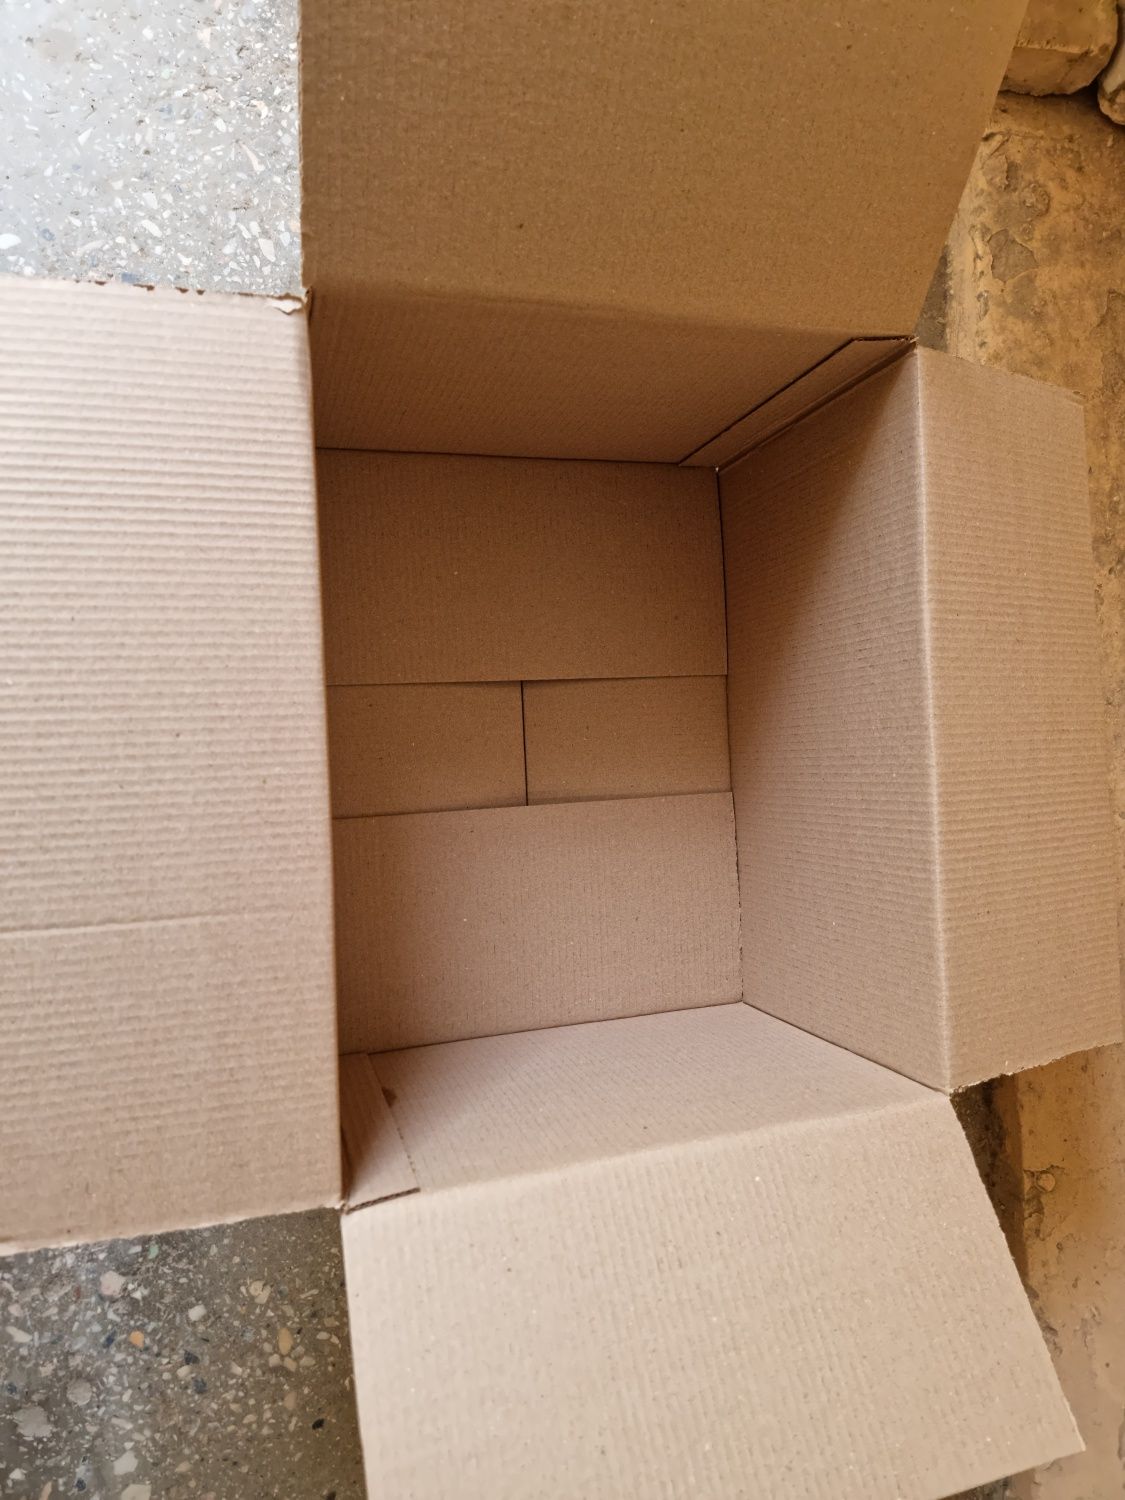 Новая картонная коробка в наличии и на заказ